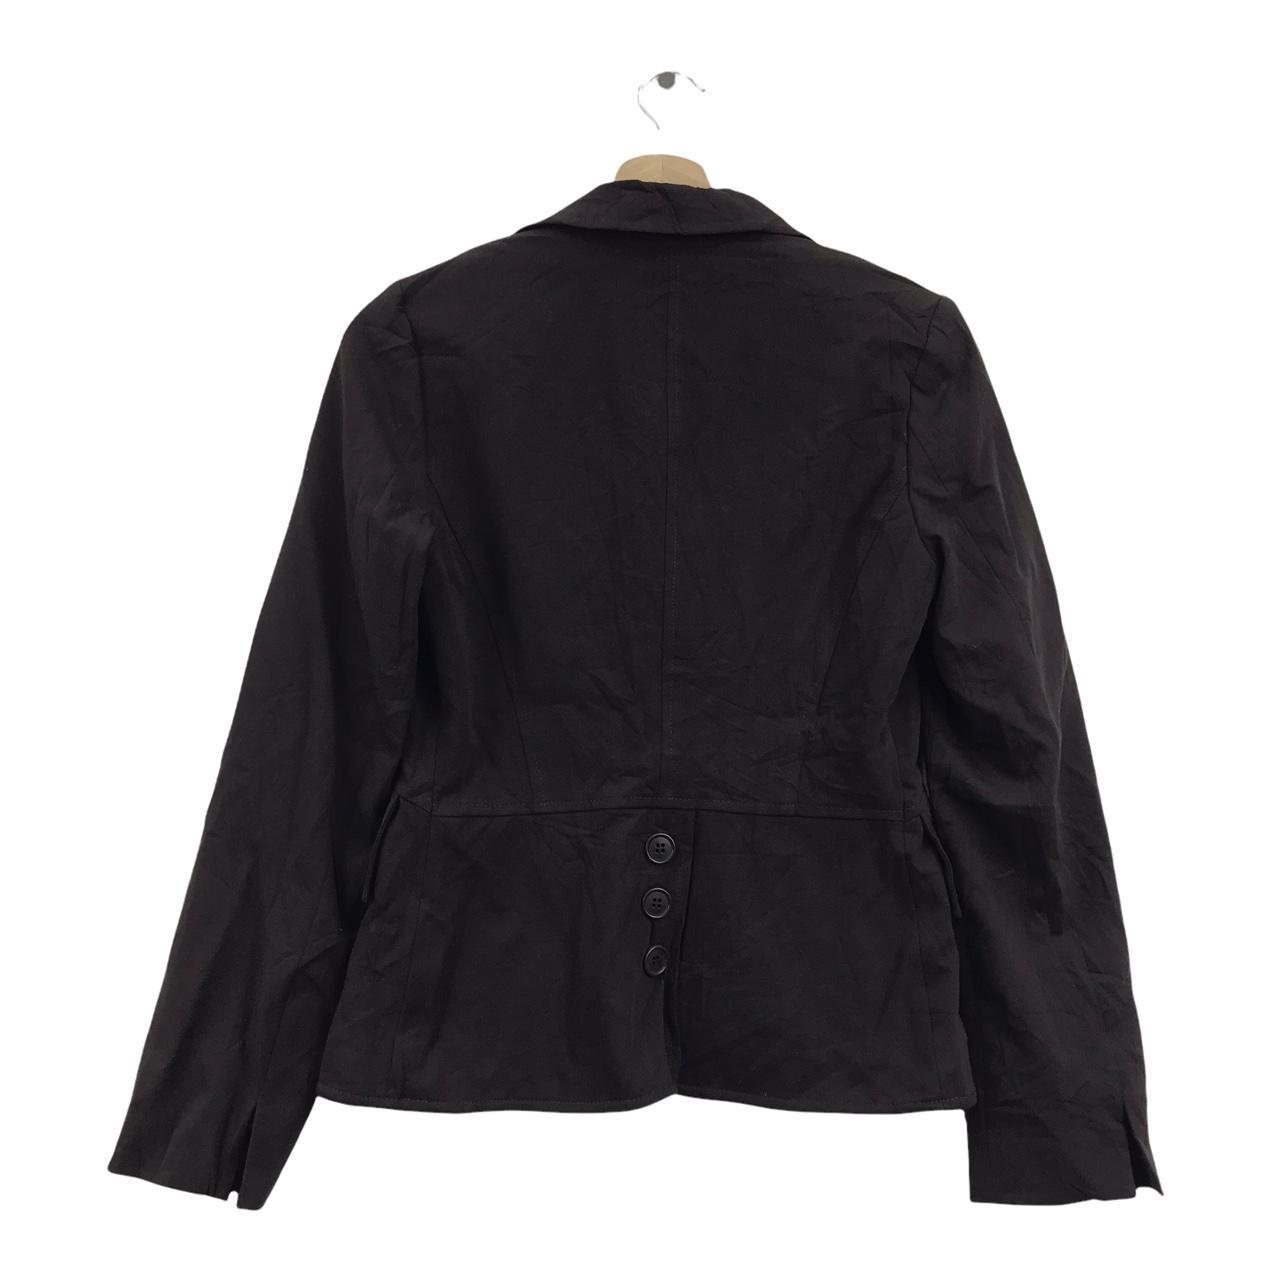 NADINE ITALY Designer Brand Button Back Coat Jacket... - Depop